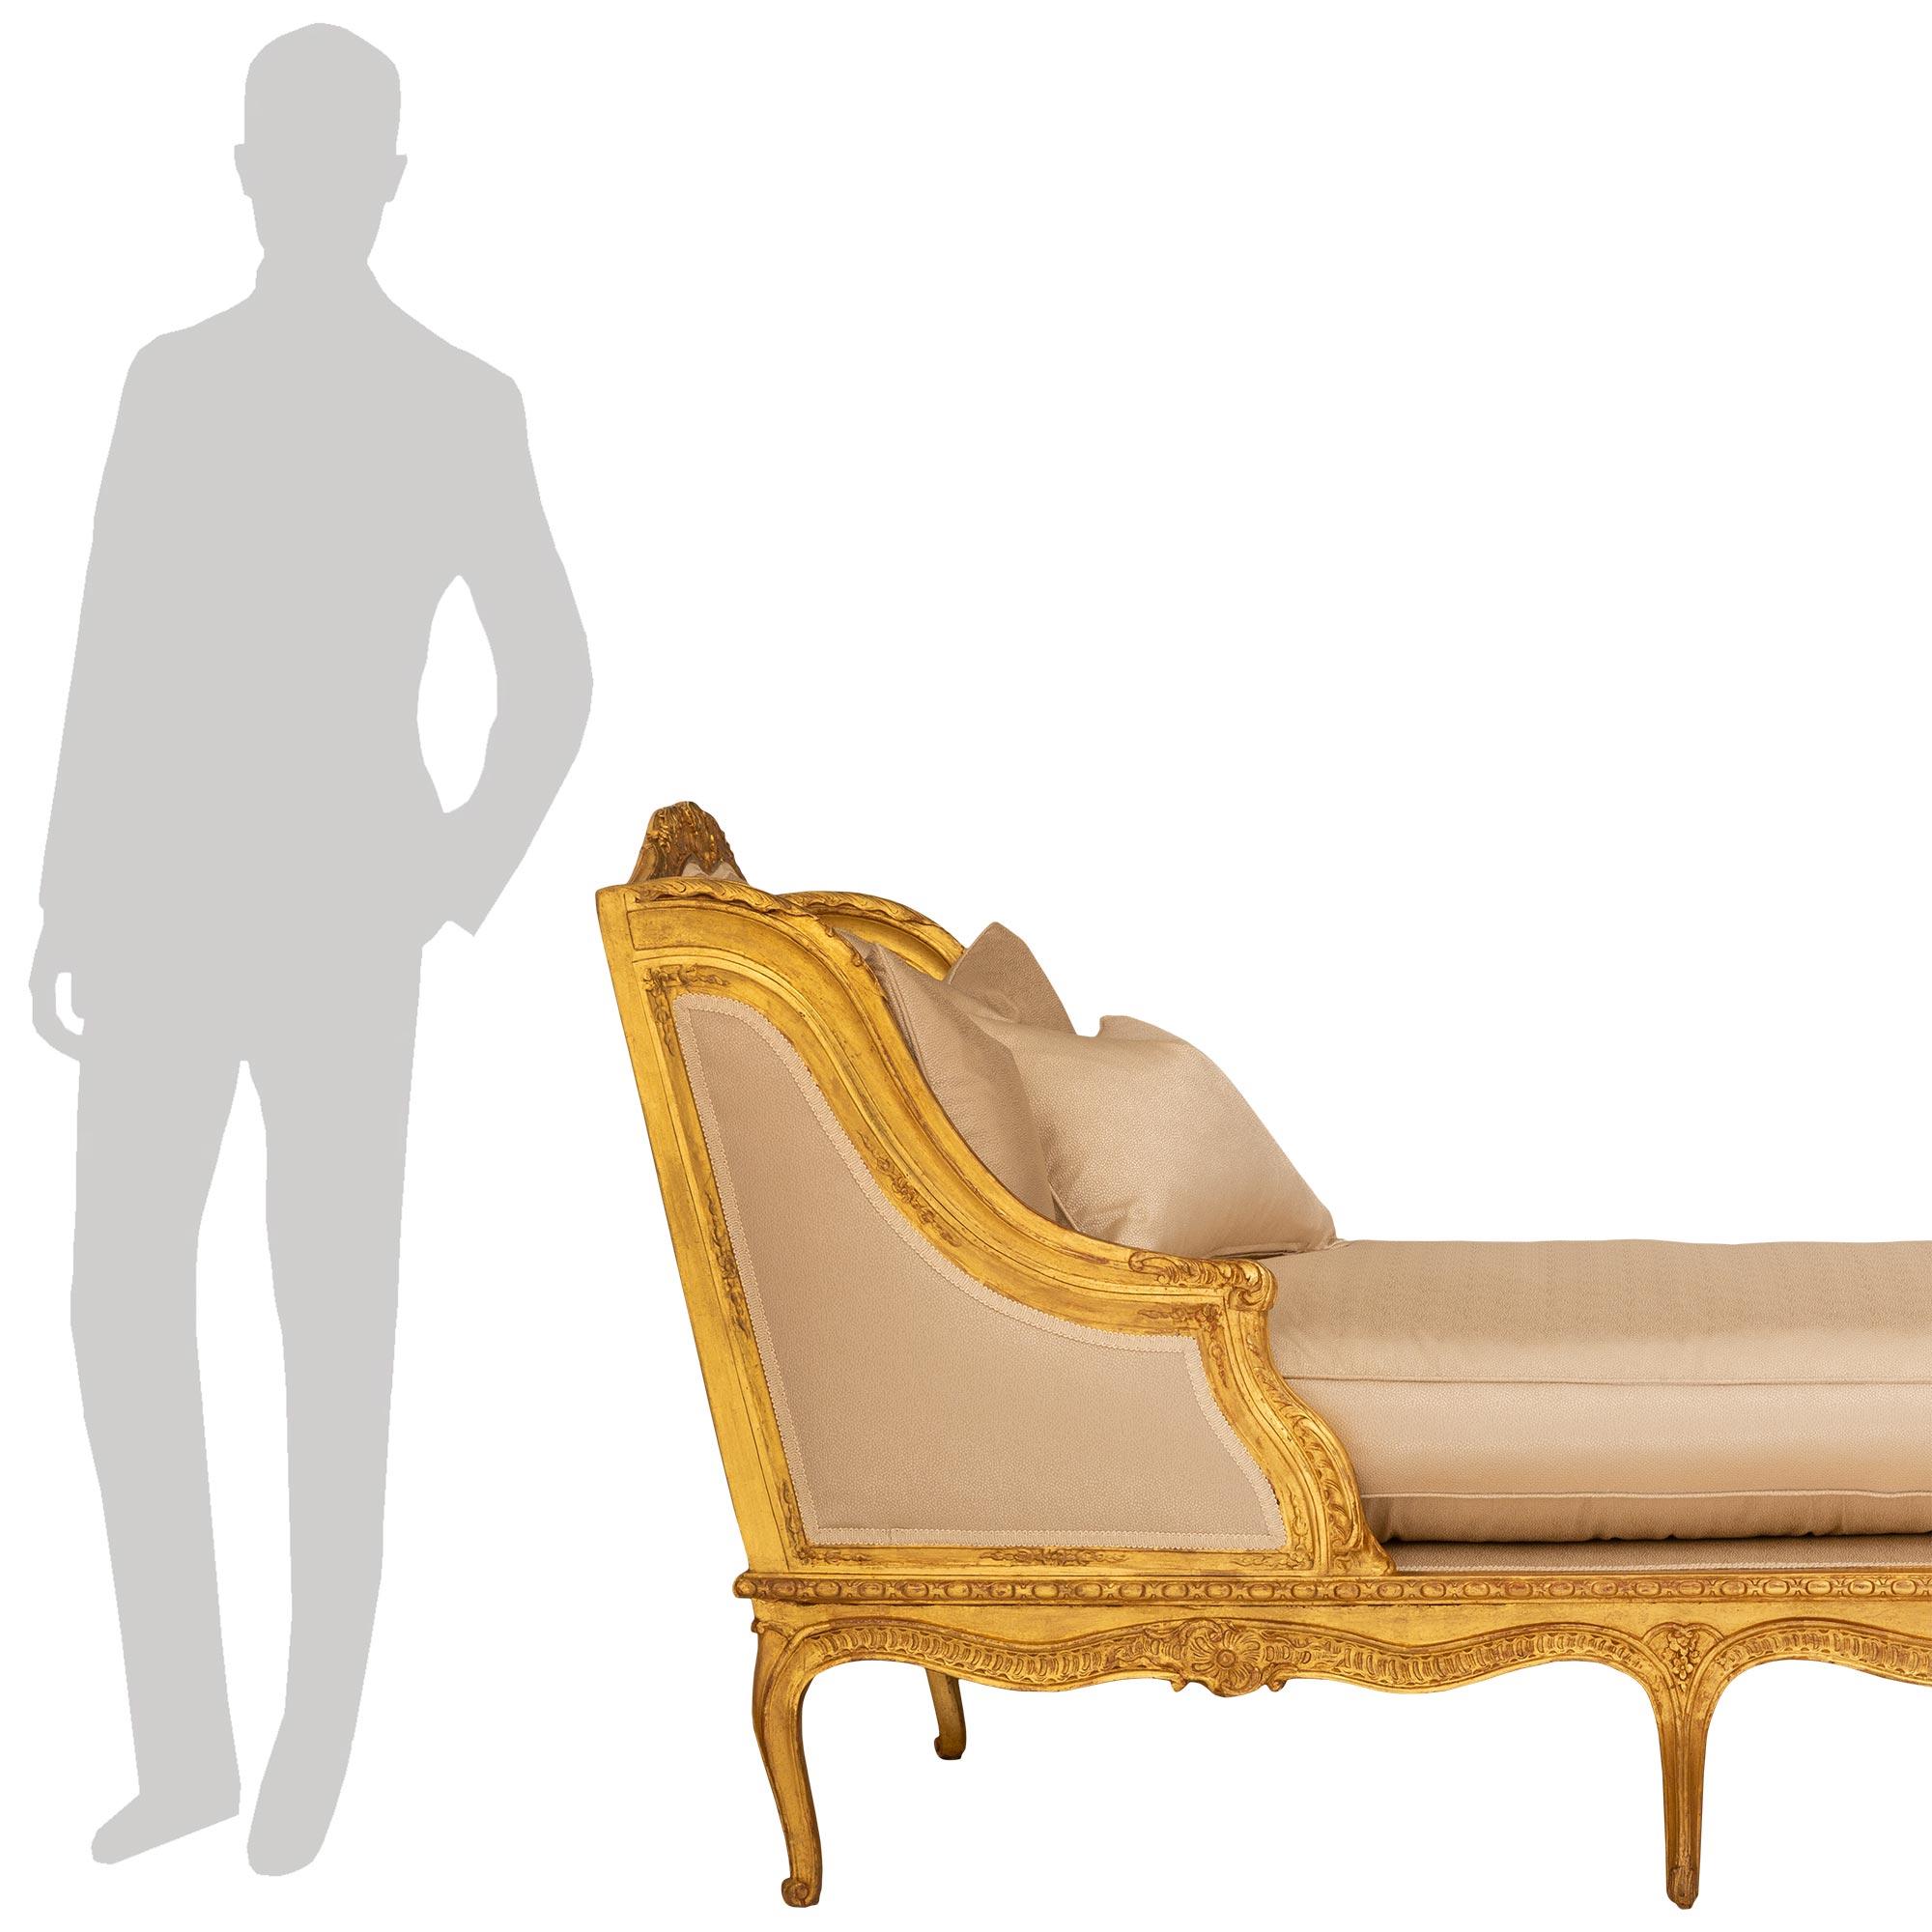 



Eine außergewöhnliche und einzigartige französische Récamier-Chaise aus vergoldetem Holz des frühen 19. Jahrhunderts. Die Chaise steht auf sechs eleganten Cabriole-Beinen mit geschnitzten Blumen auf der Oberseite, und die Schürze mit